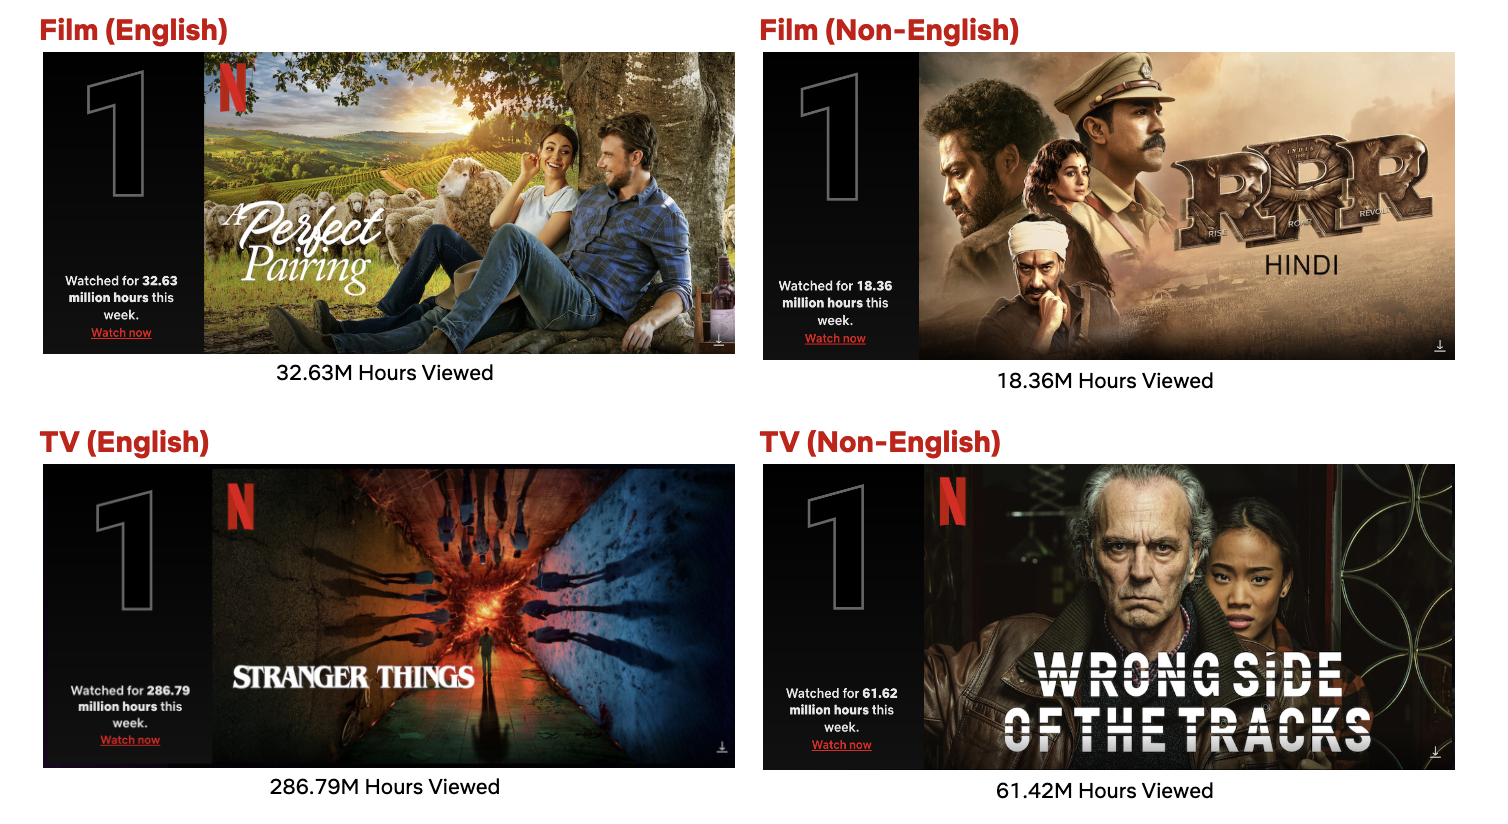 Que horas sai a nova temporada de Stranger Things na Netflix?